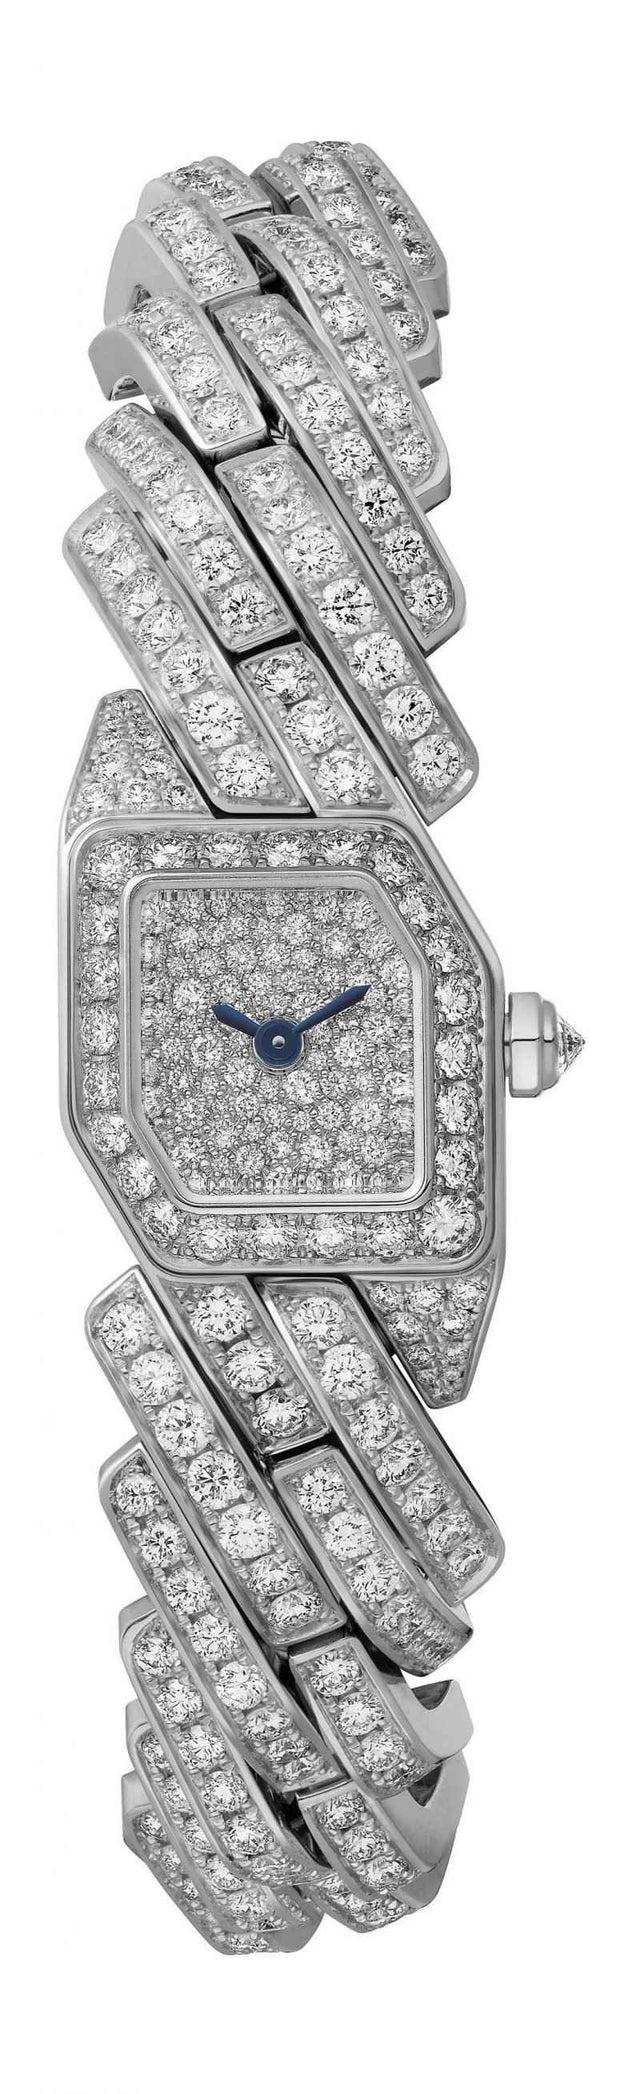 Cartier Maillon de Cartier Woman's watch WJBJ0005